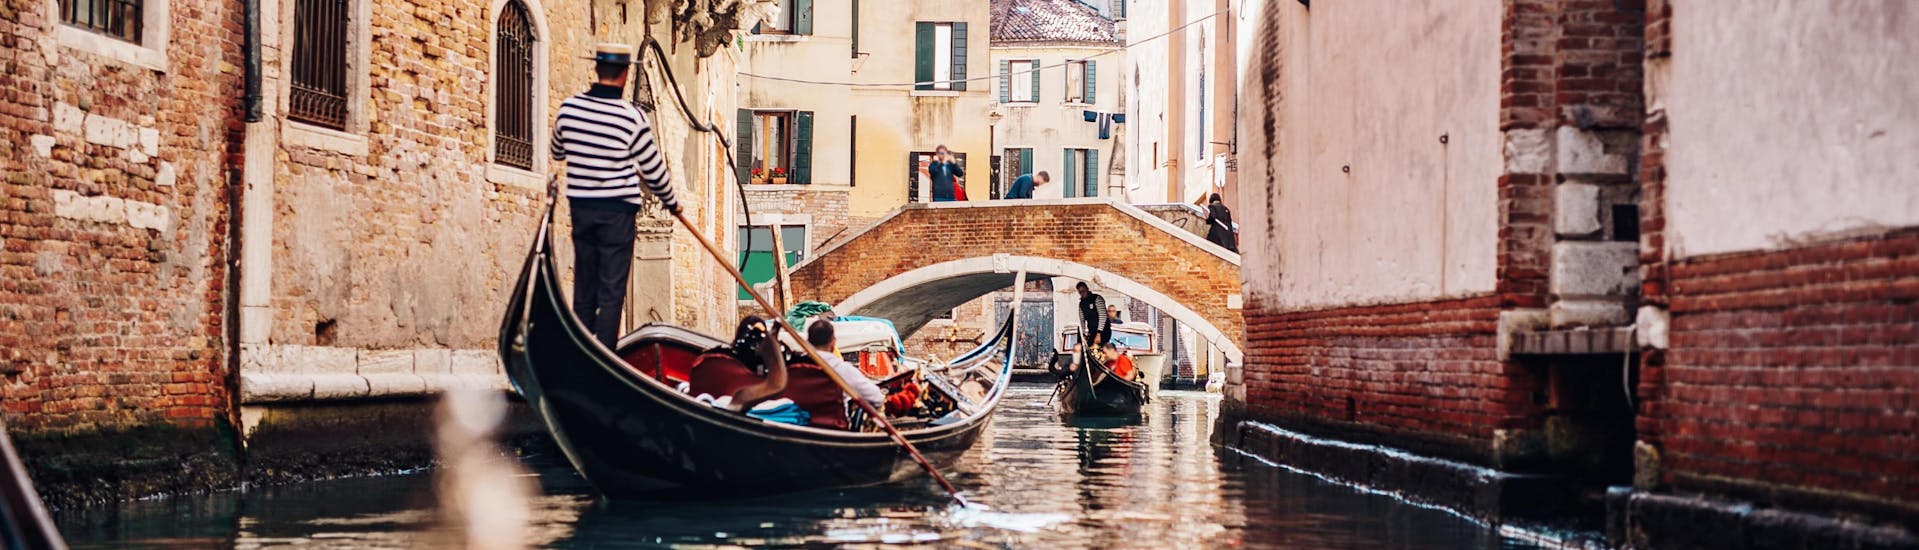 Un gondolier pagaie dans un canal étroit lors d'une promenade en gondole à Venise.